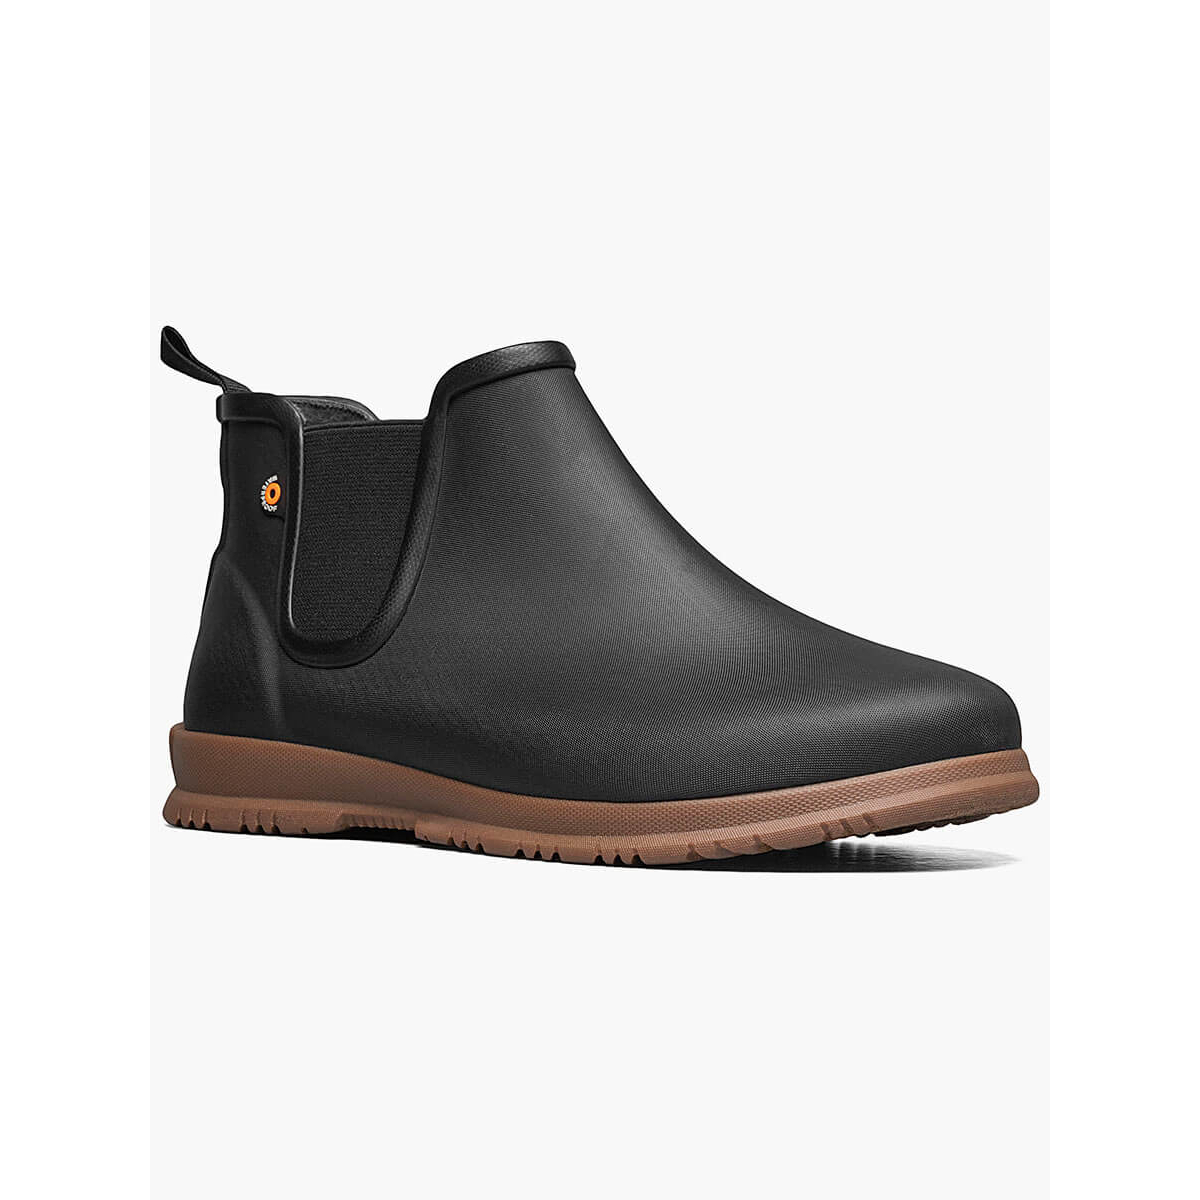 BOGS Women's Sweetpea Waterproof Slip On Rain Boots Black- 72198-001 - BLACK, 8